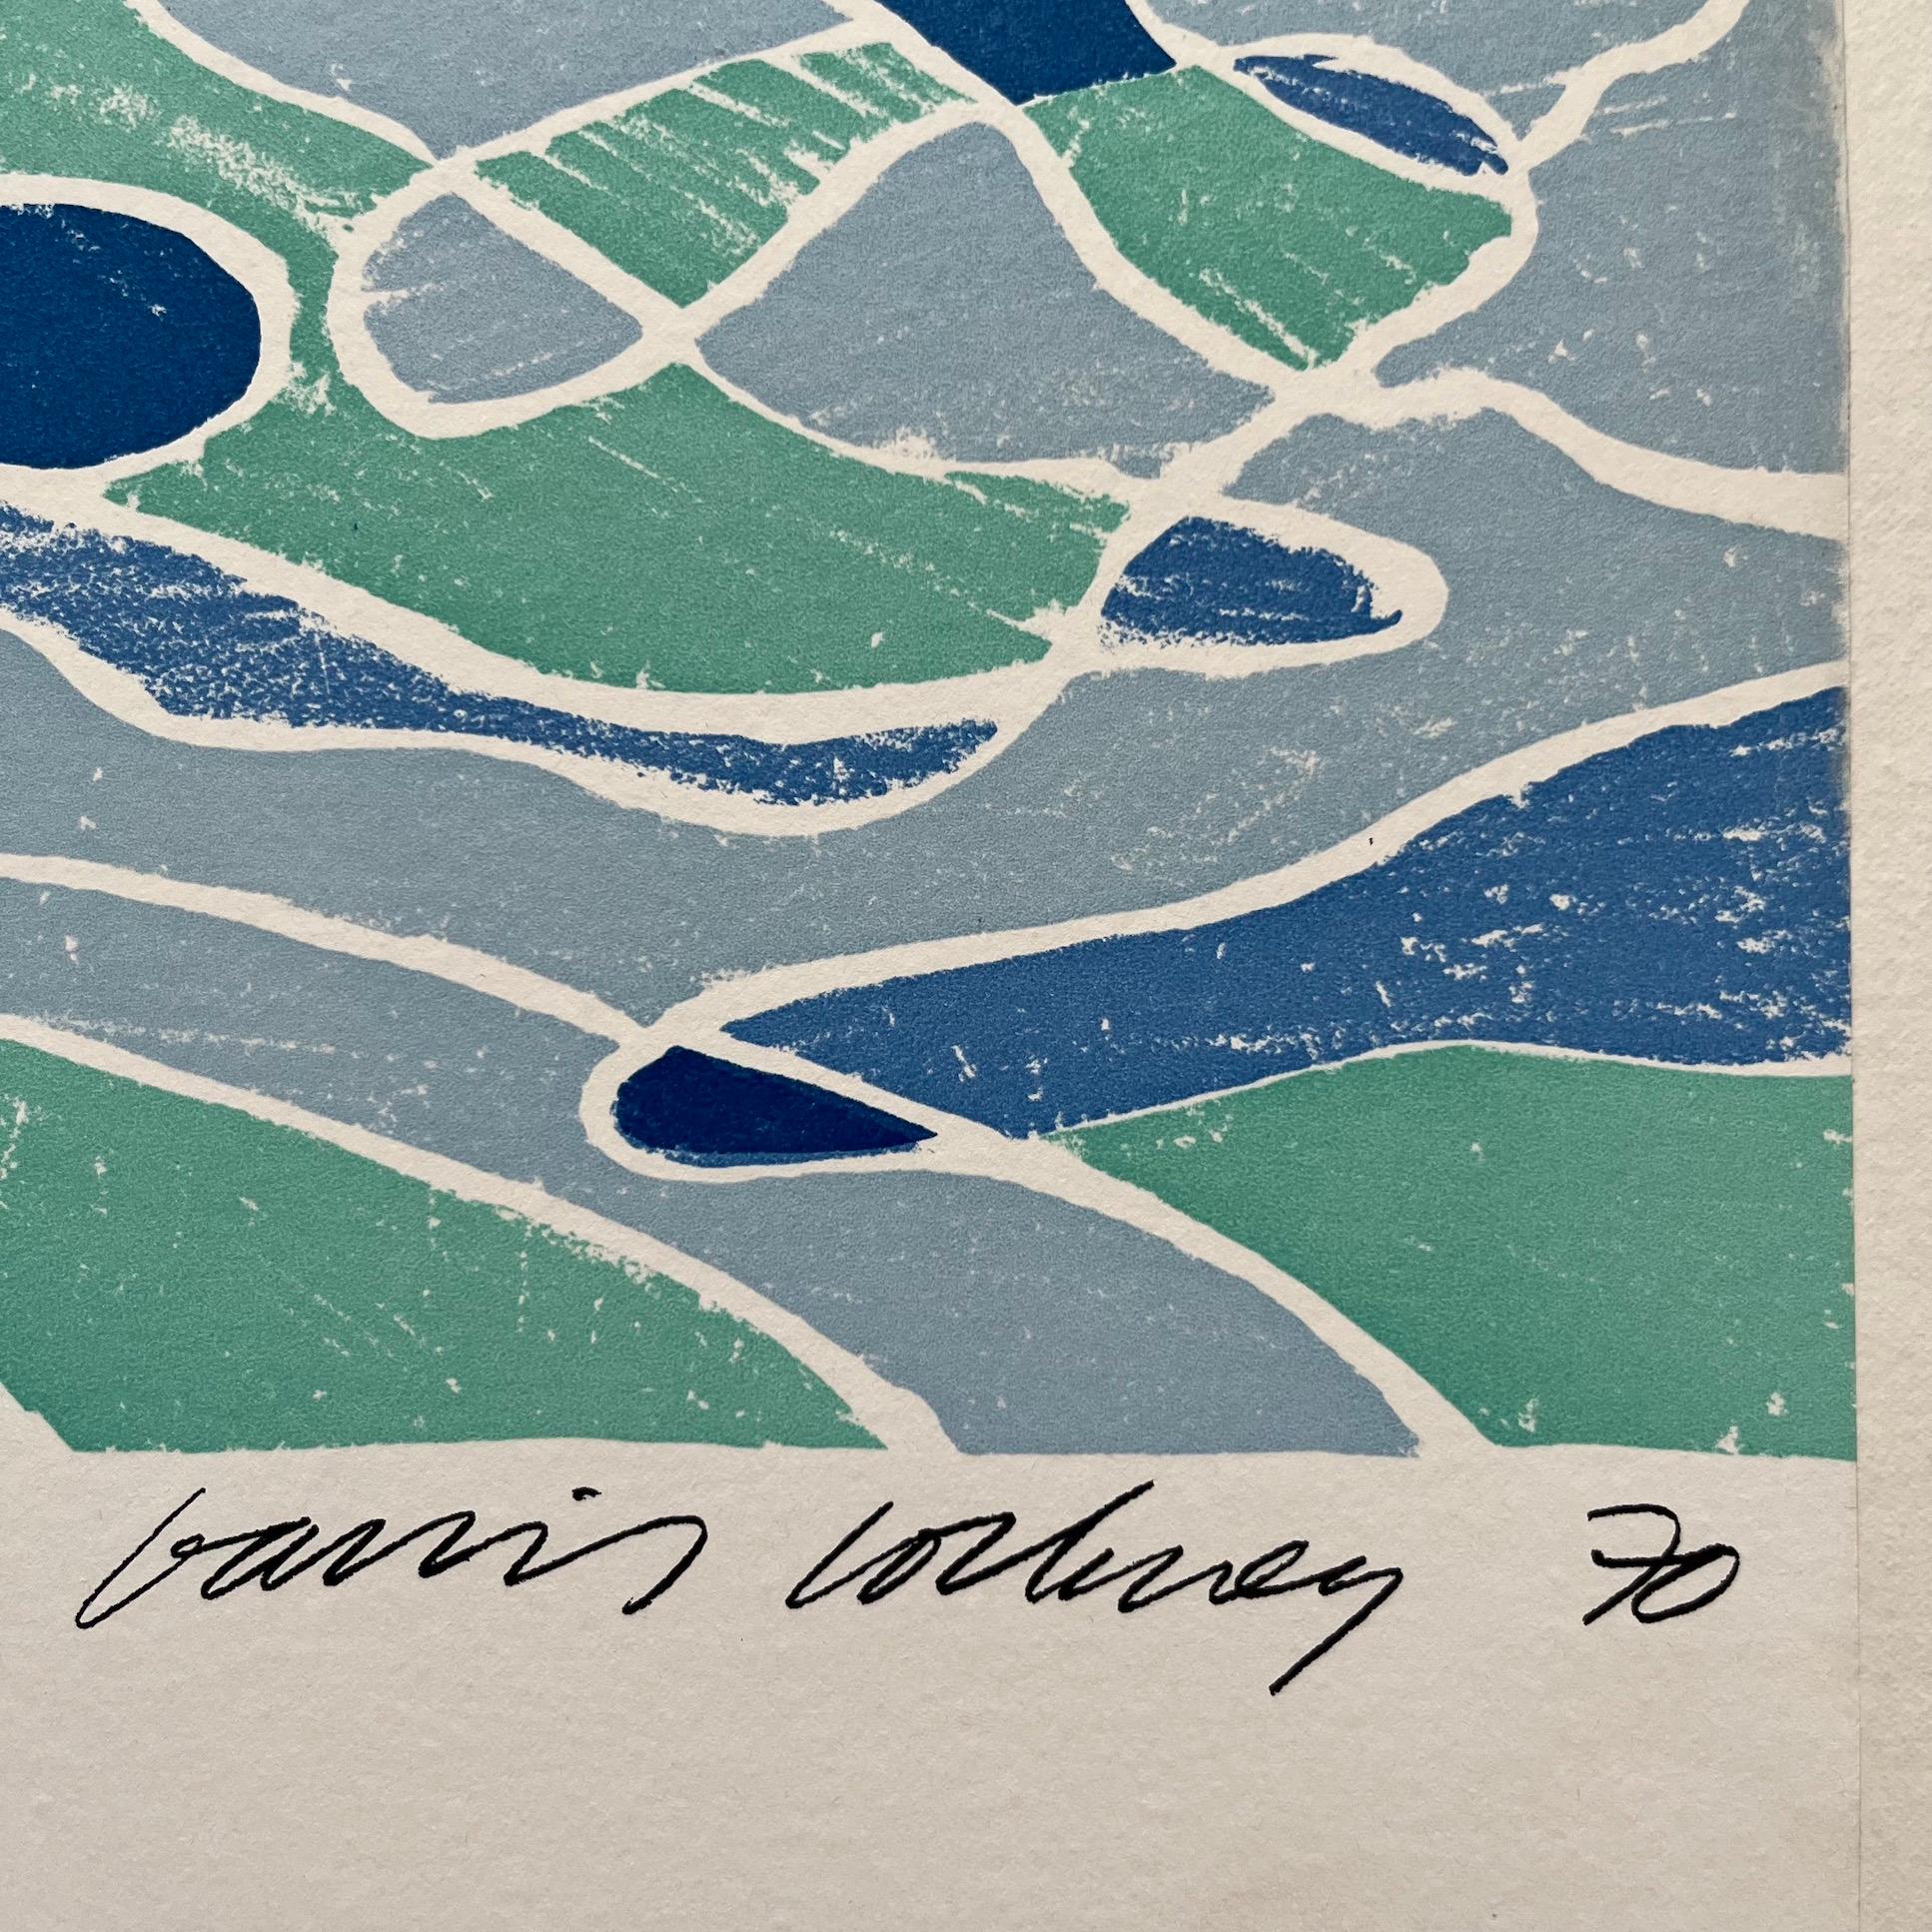 Dieses klassische Bild von David Hockney wurde für die Olympischen Spiele 1972 produziert, die vom 26. August bis zum 10. September in München stattfanden. Die XX. Olympiade war mit 195 Sportveranstaltungen und über 7000 Athleten aus 121 Nationen